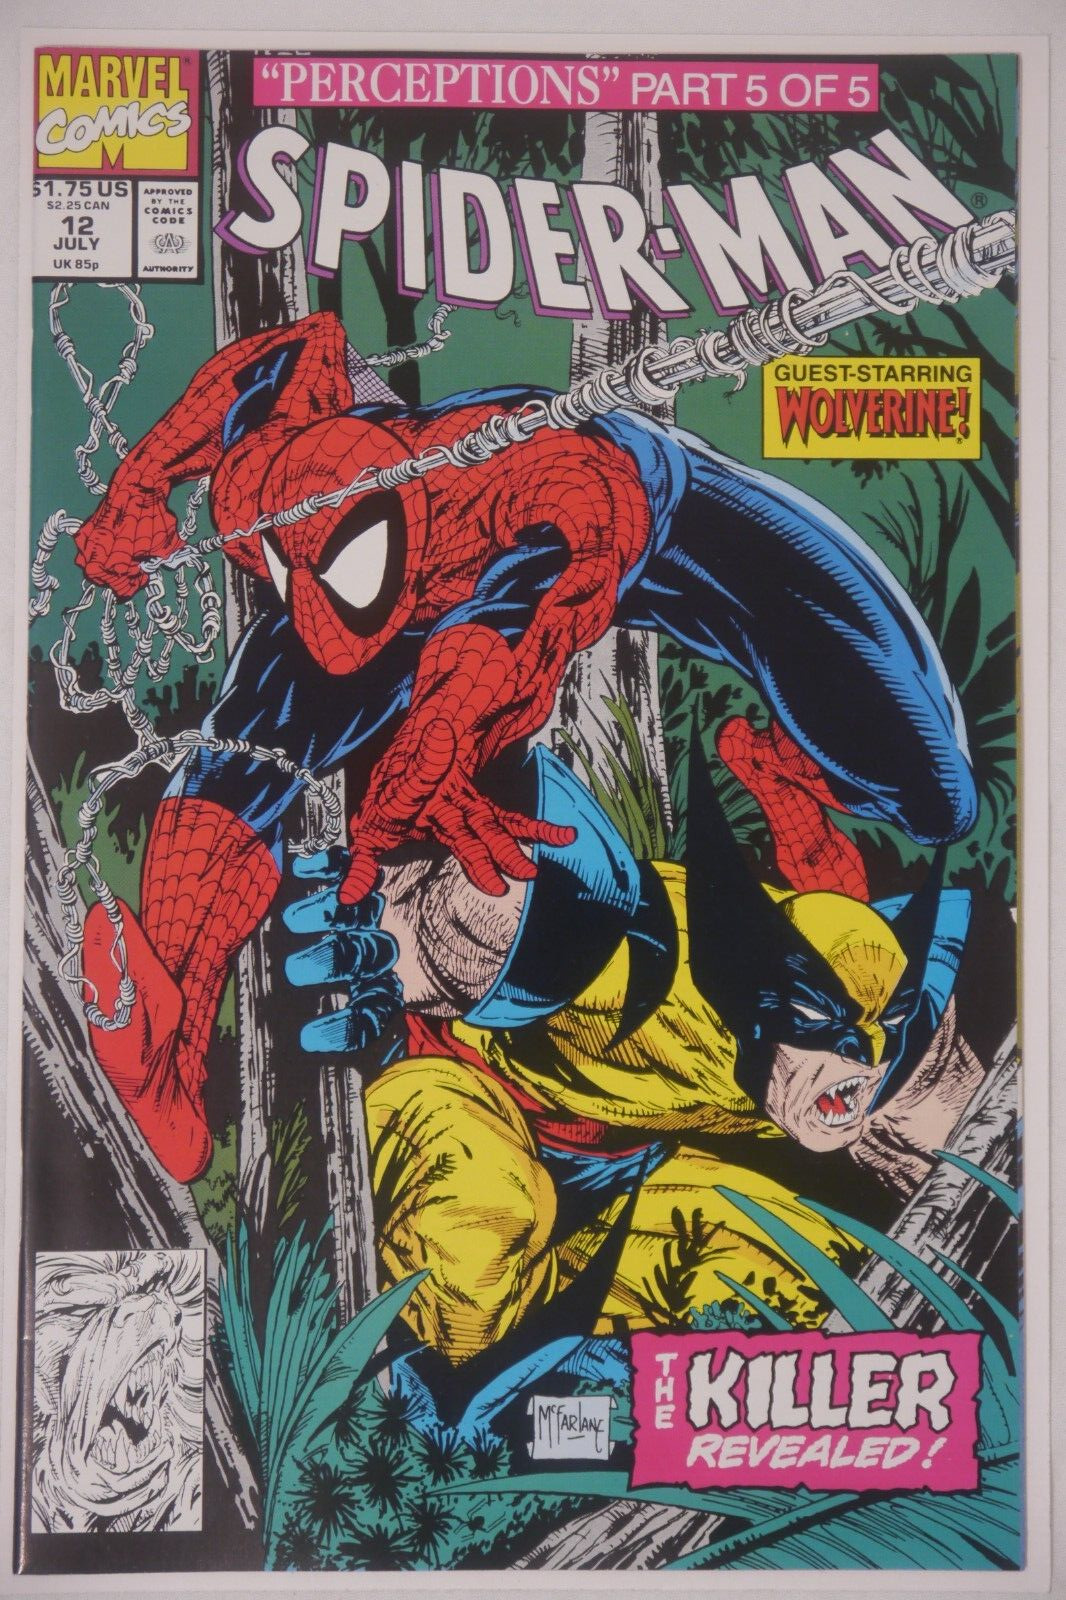 Marvel Comics Spider-Man #12 (Perceptions Part 5 Of 5)